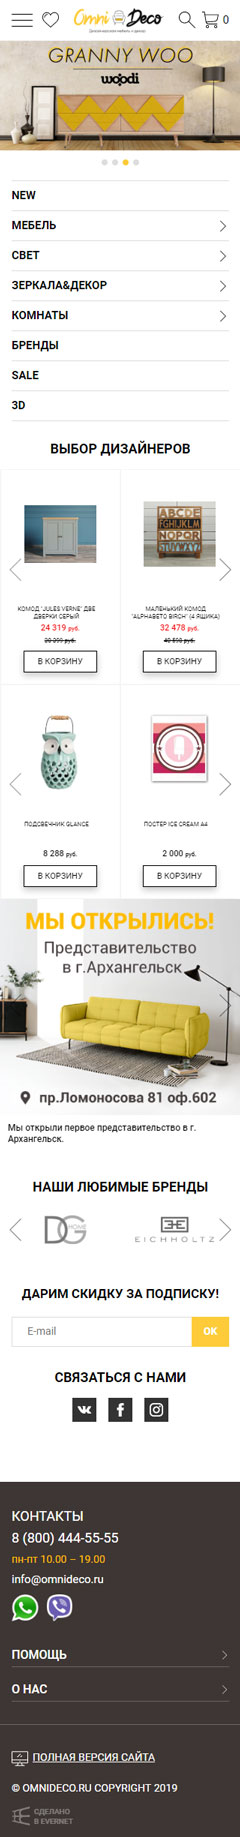 Дизайн мобильная версия сайта Omnideco — магазин дизайнерской мебели